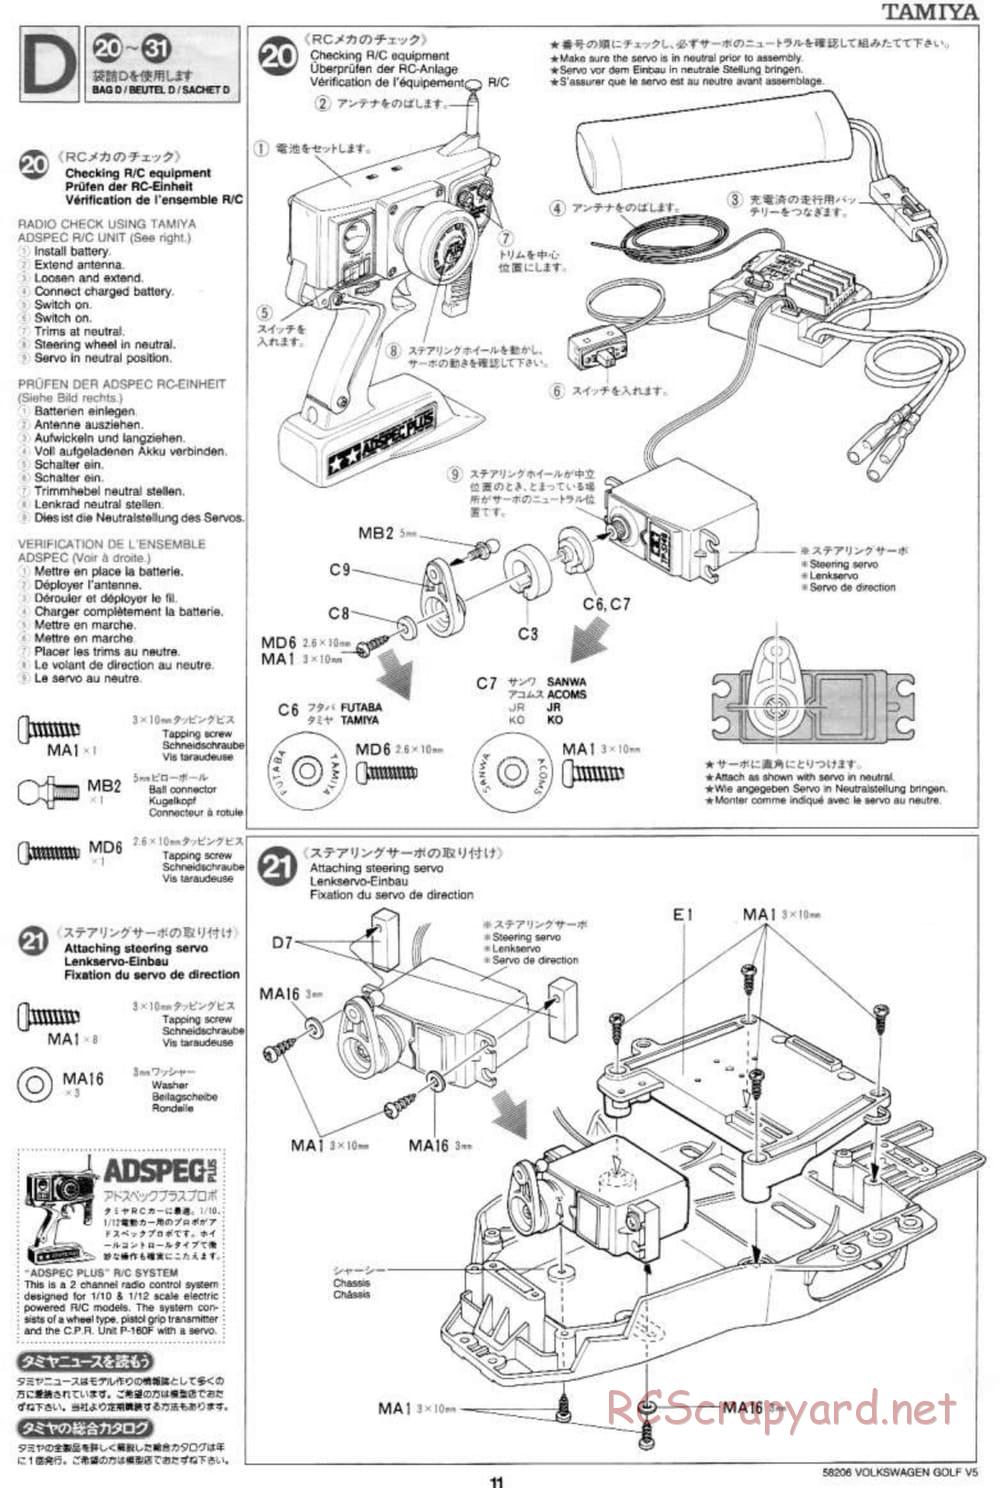 Tamiya - Volkswagen Golf V5 - FF-01 Chassis - Manual - Page 11